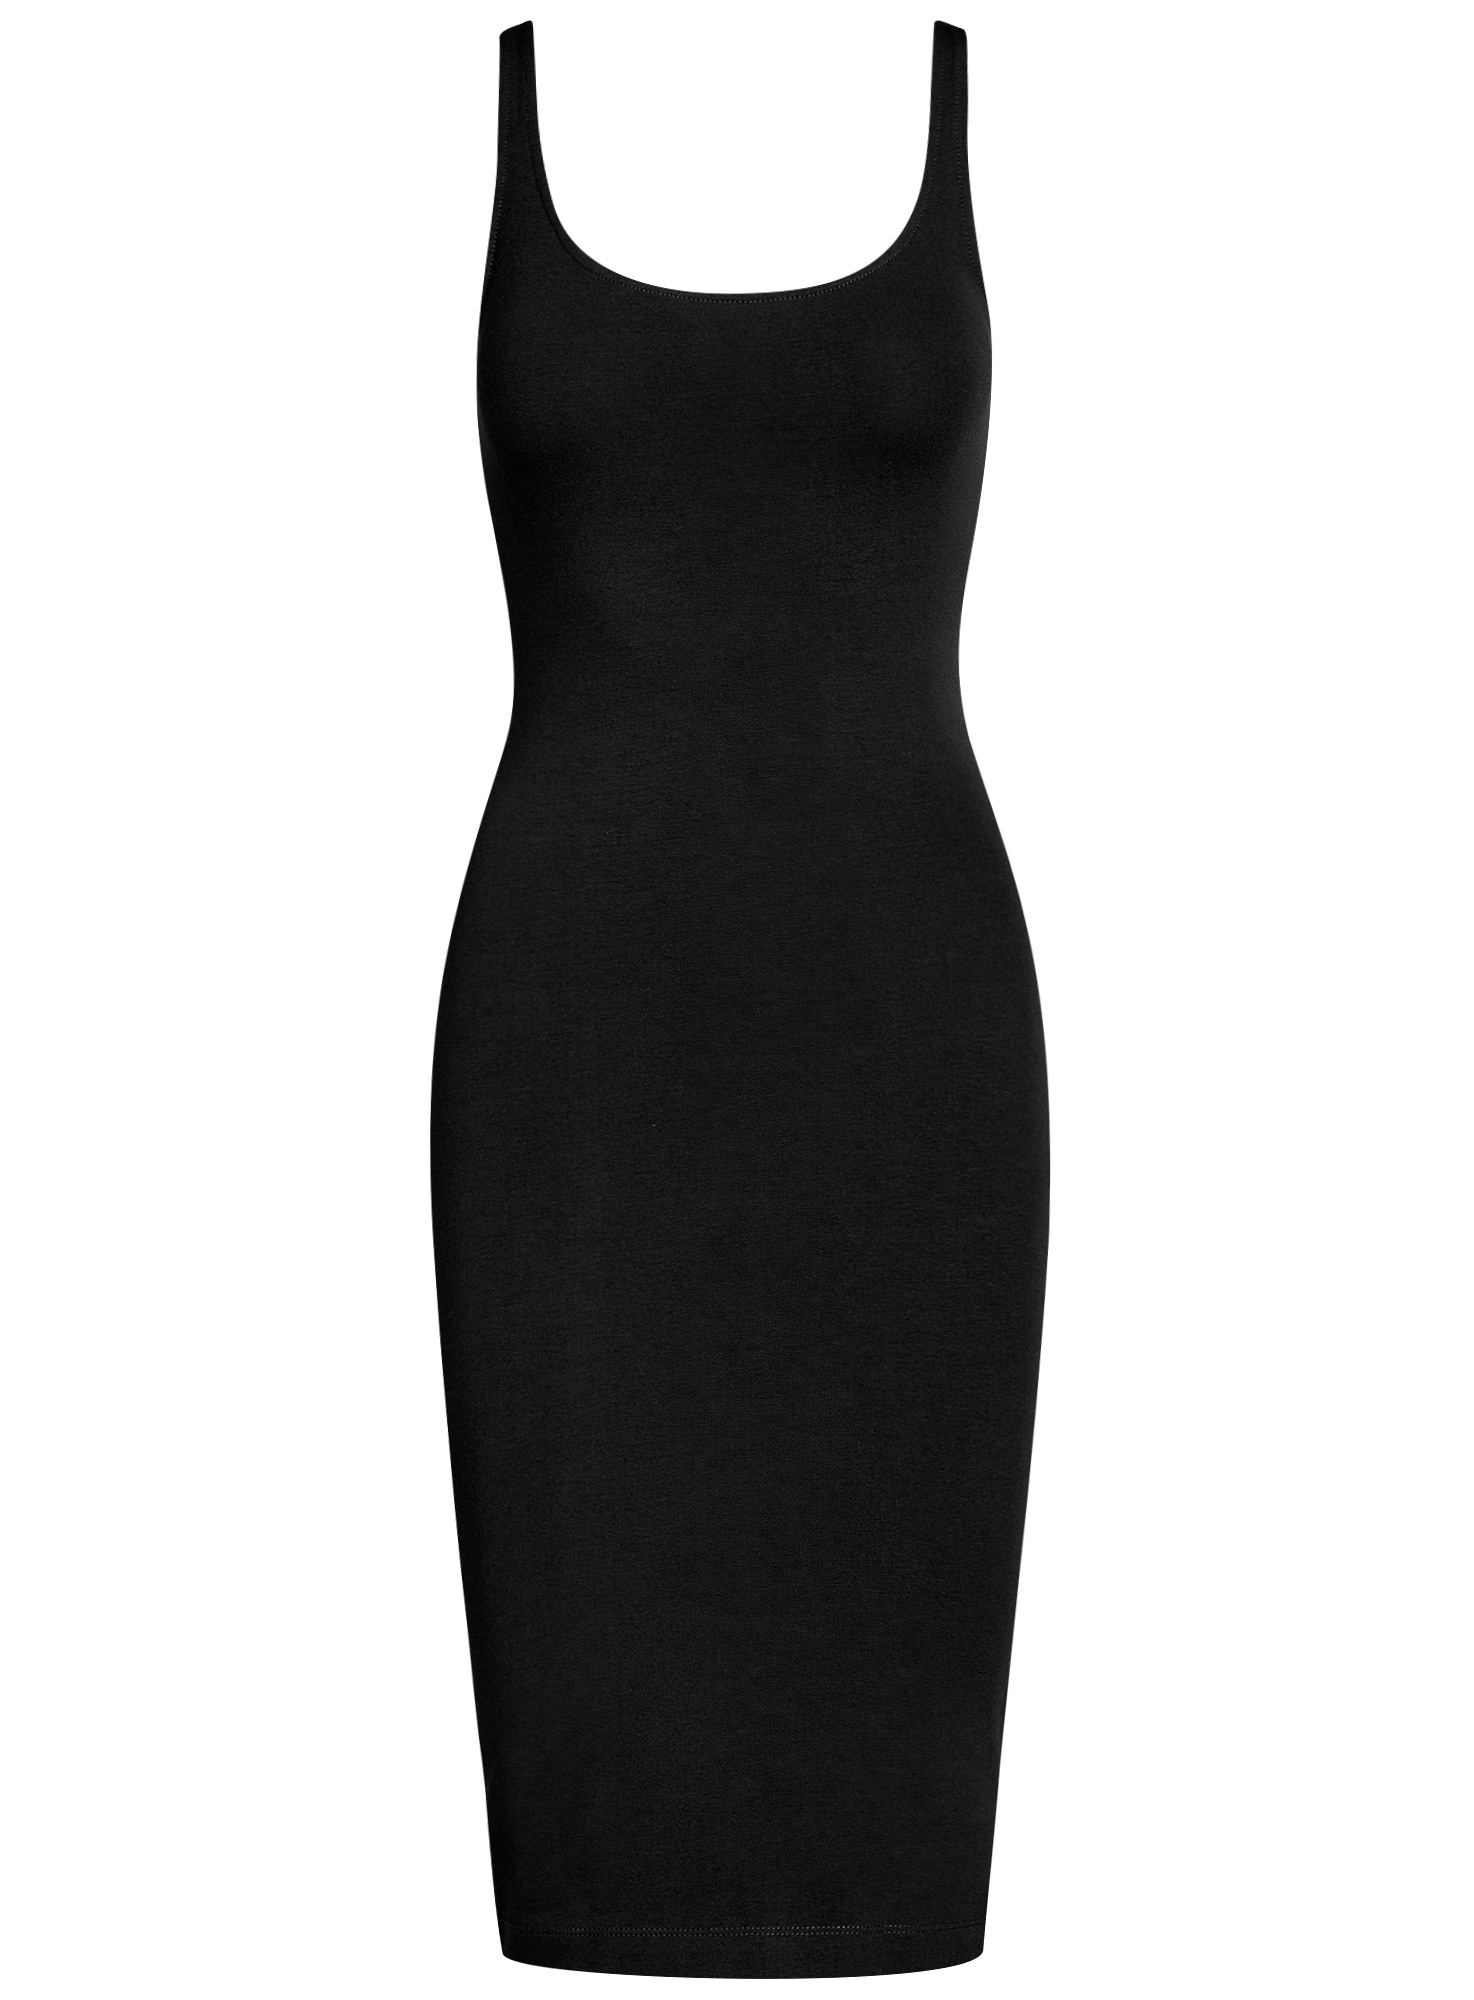 Платье женское oodji 14015007-2B черное 2XS